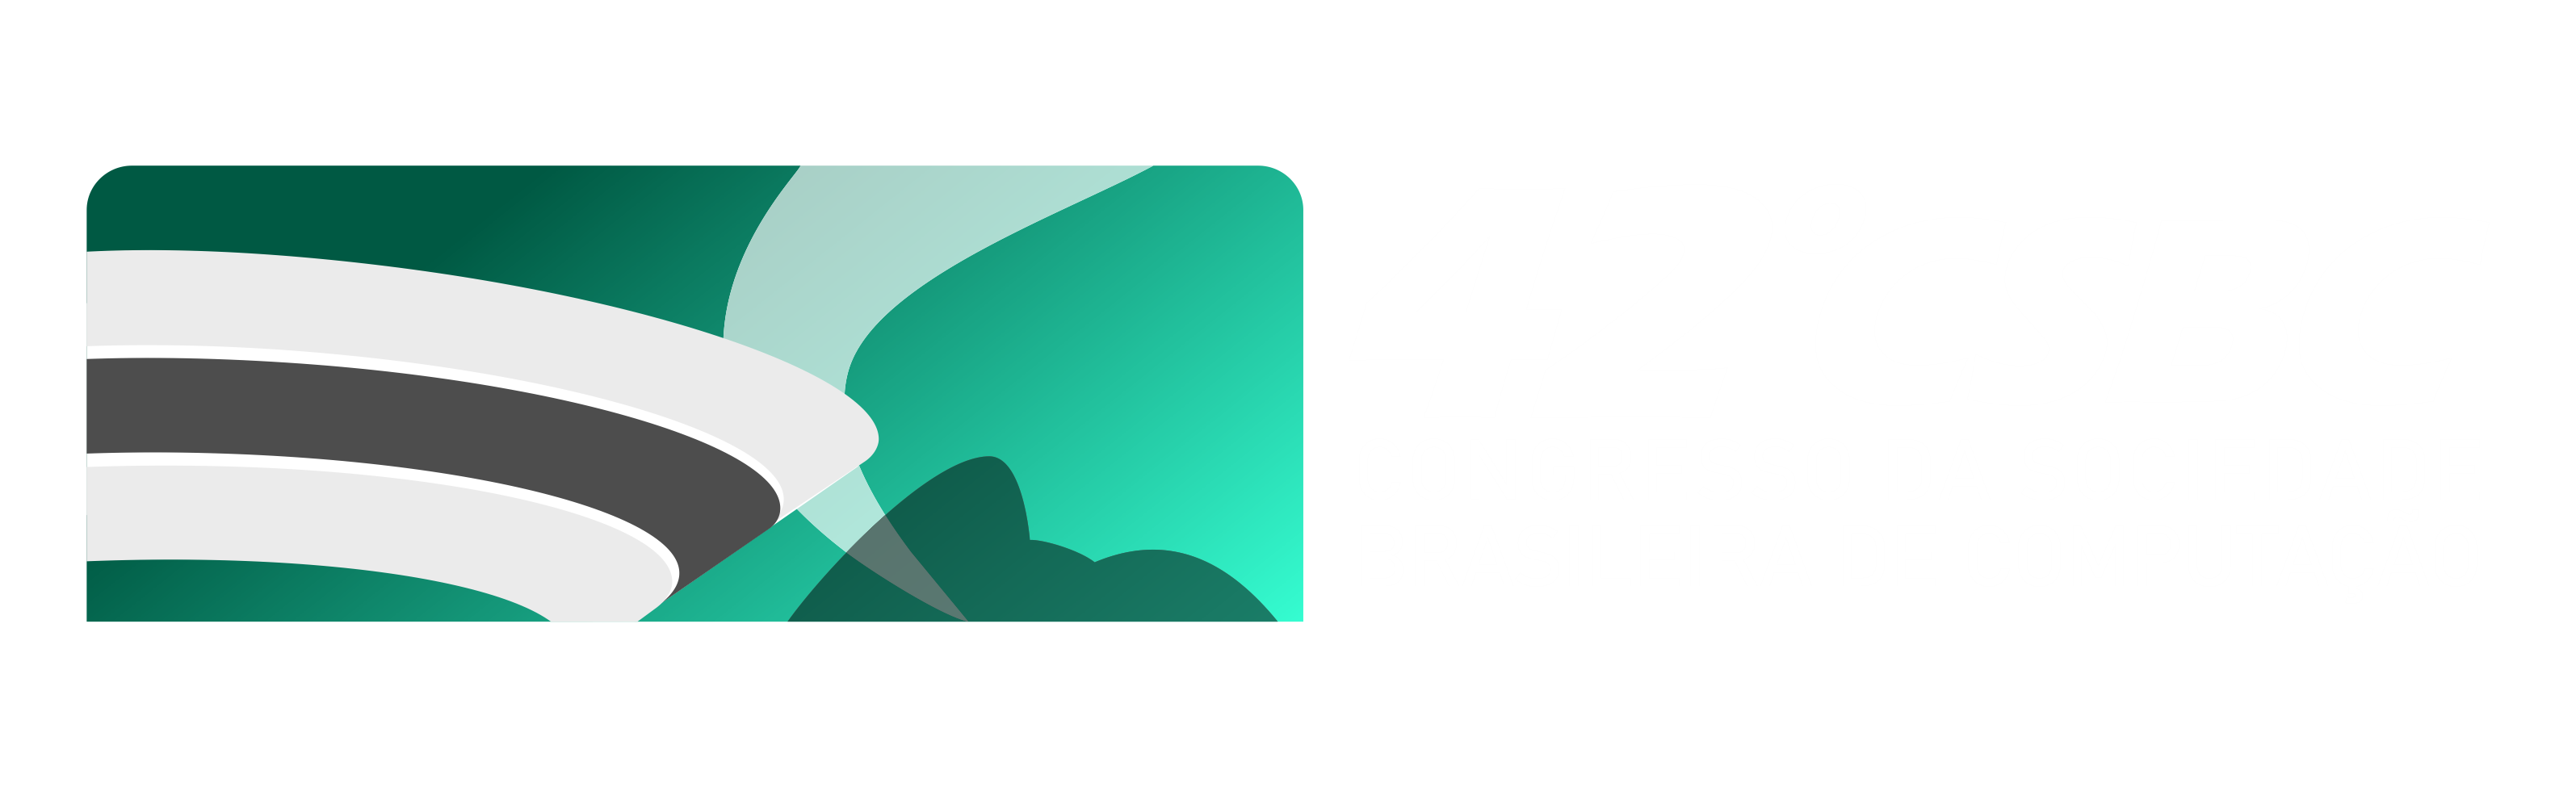 XLII Congresso da Sociedade Brasileira de Computação (CSBC 2022)